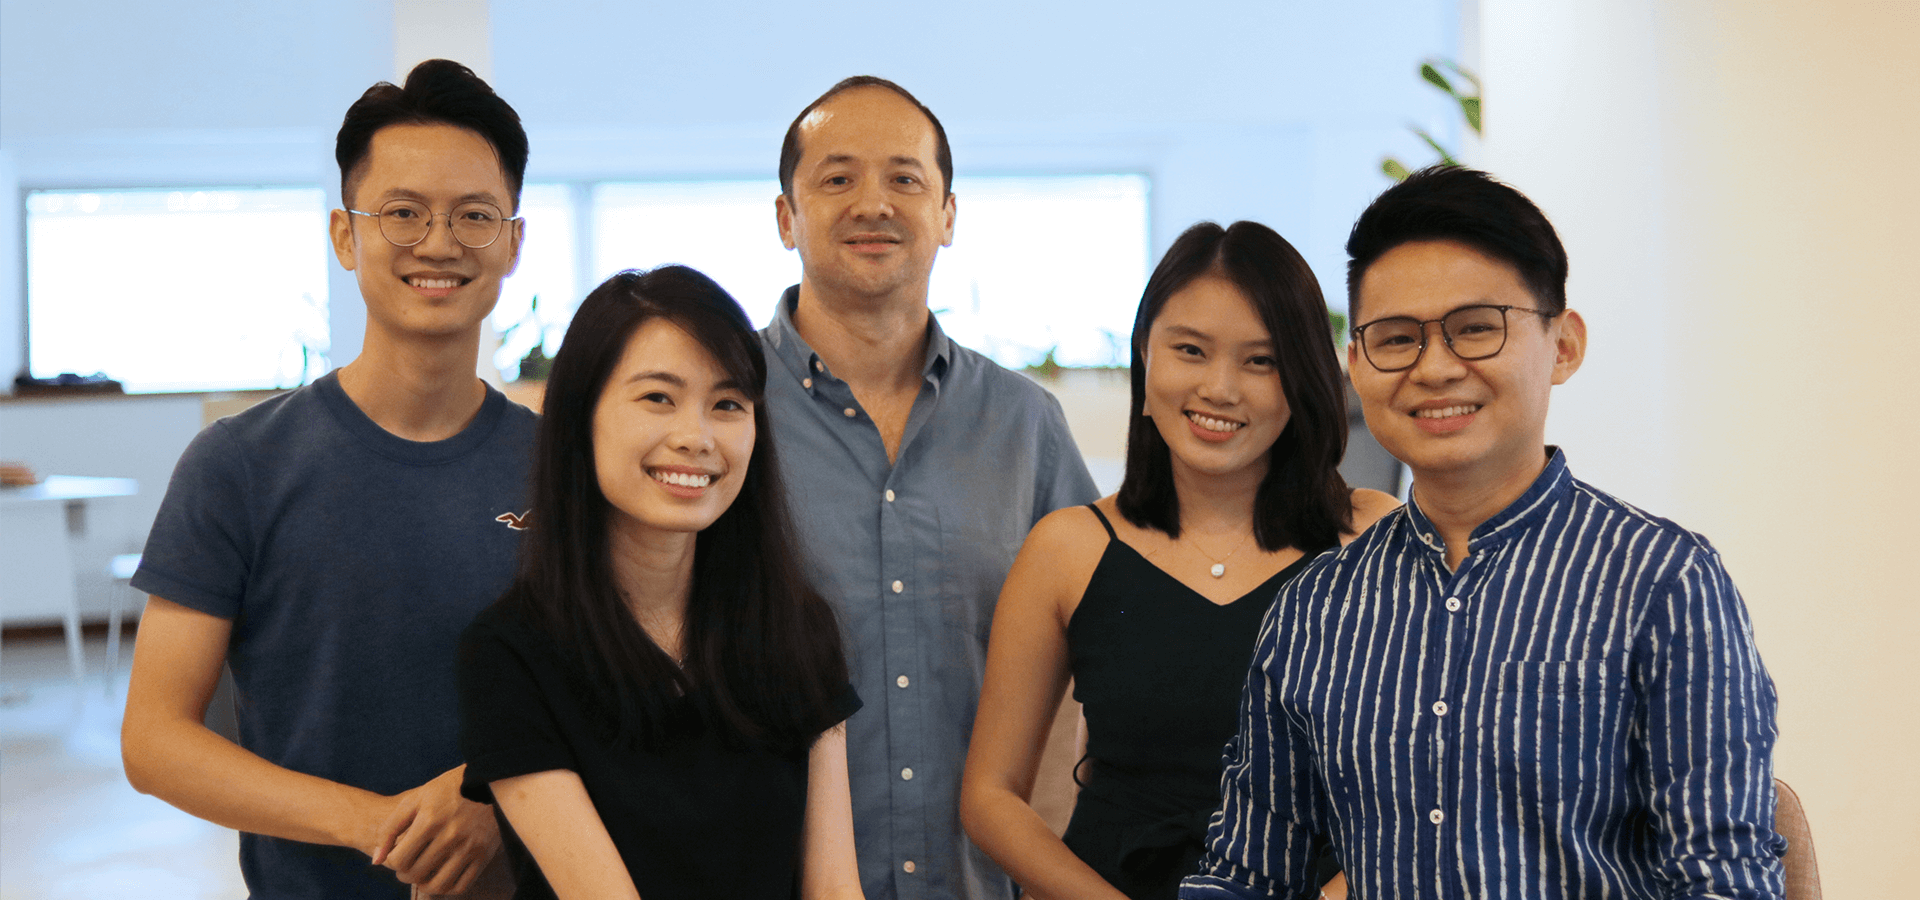 The people behind Lab360: Arvin, Elizabeth, James, Miranda and Agung